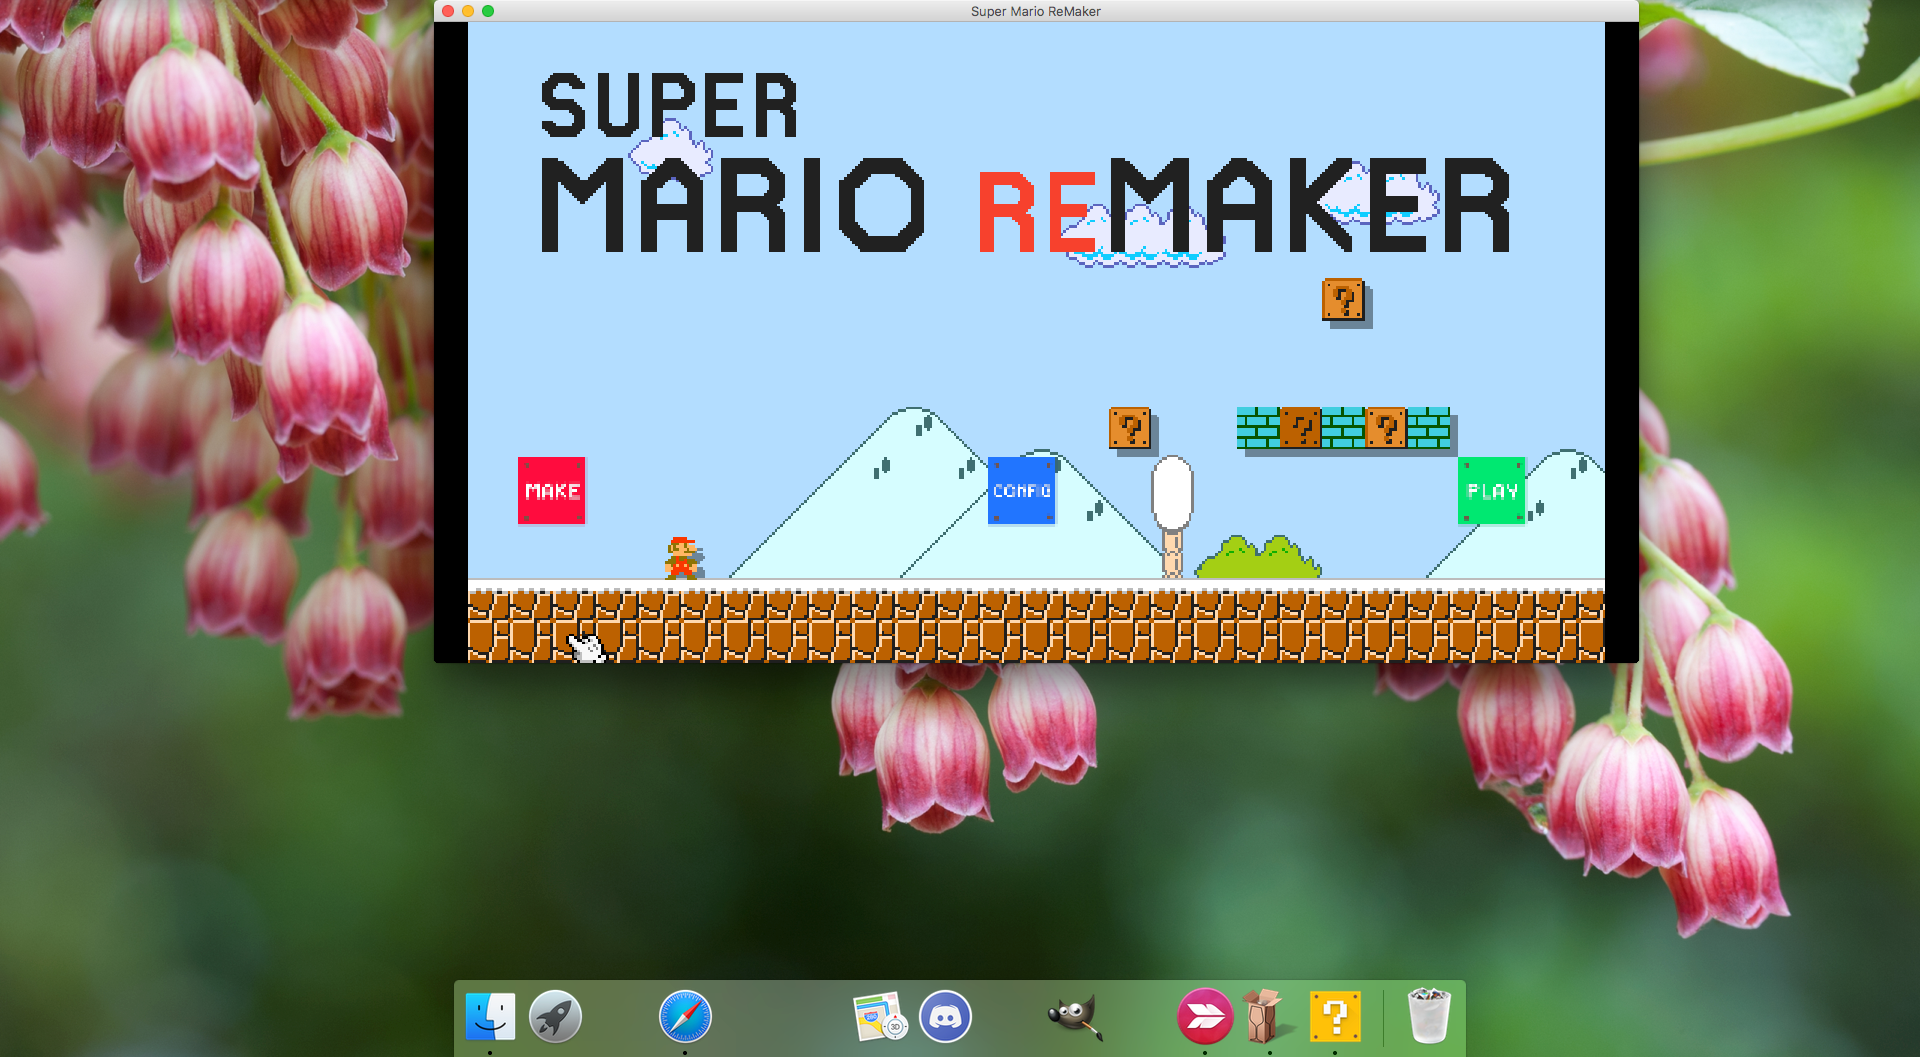 Running Super Mario Remaker on Mac